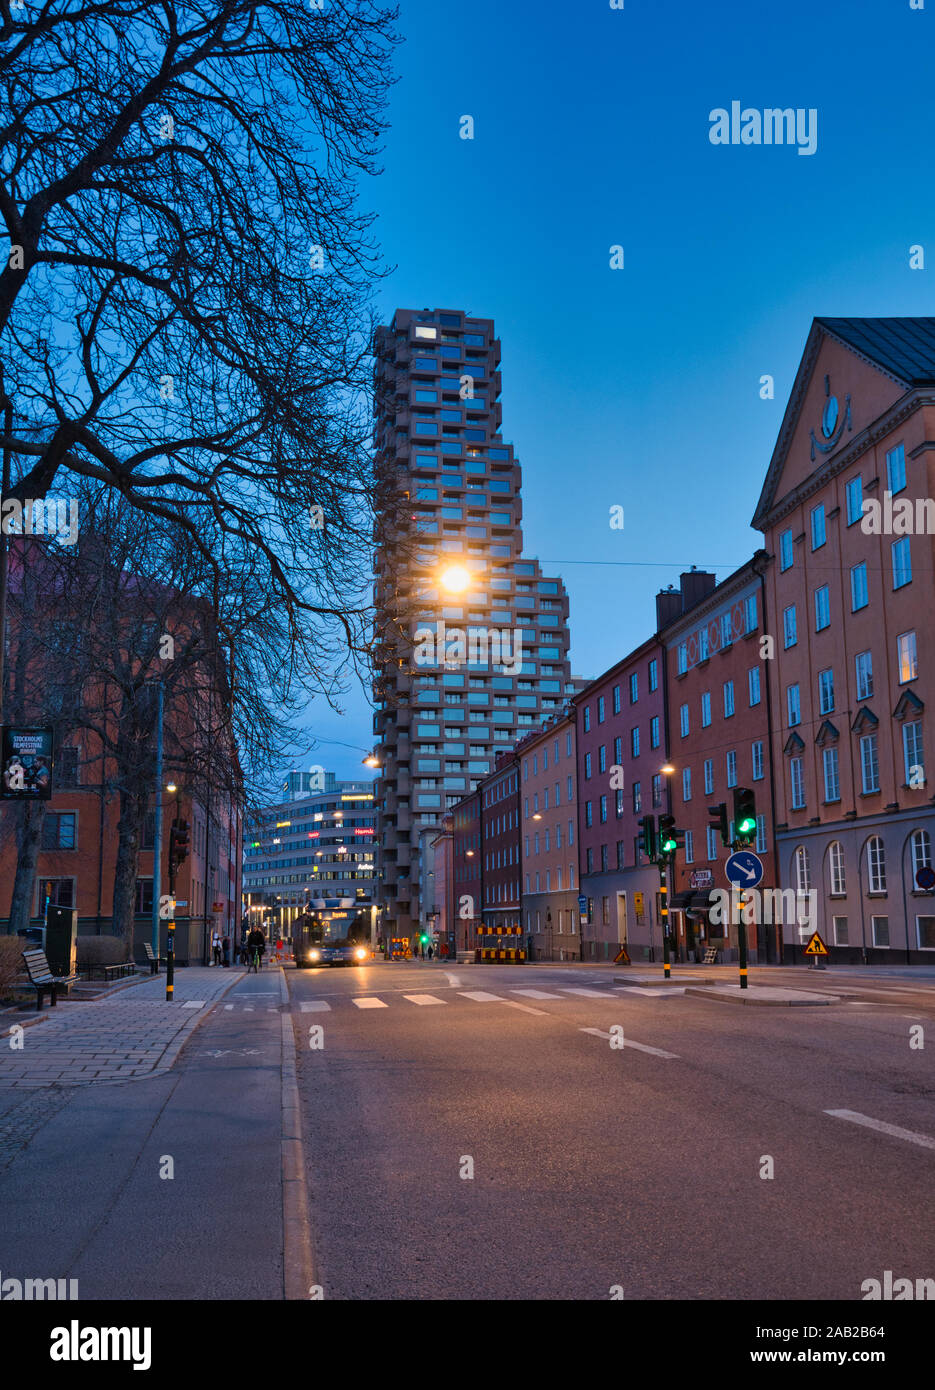 Norra Tornen wohnwolkenkratzer in der Morgendämmerung, Vasastaden, Norrmalm, Stockholm, Schweden Stockfoto